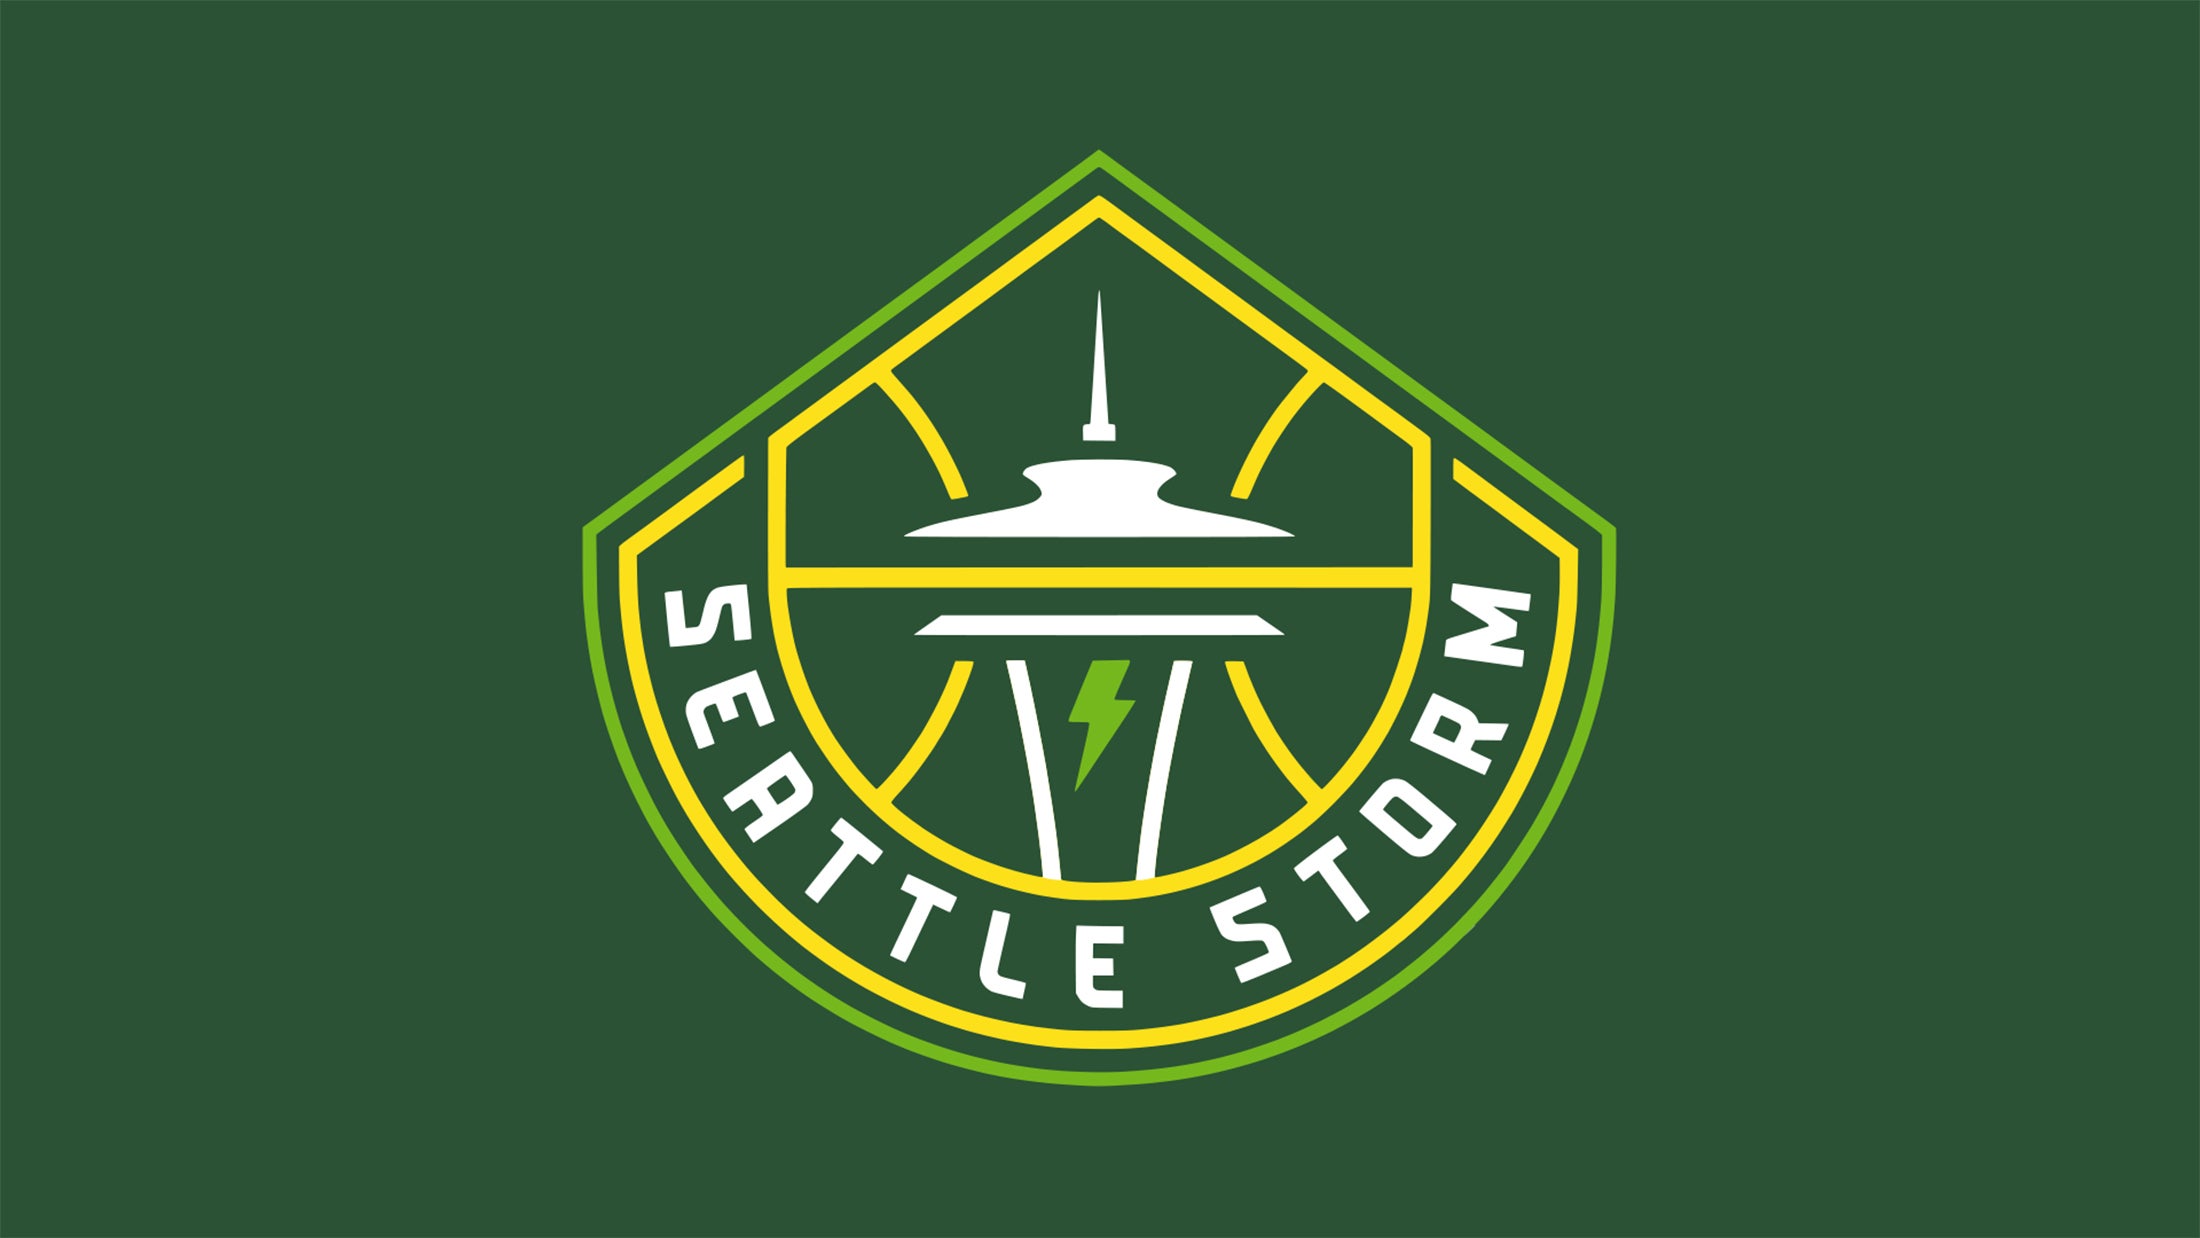 Seattle Storm vs. Washington Mystics presale passwords